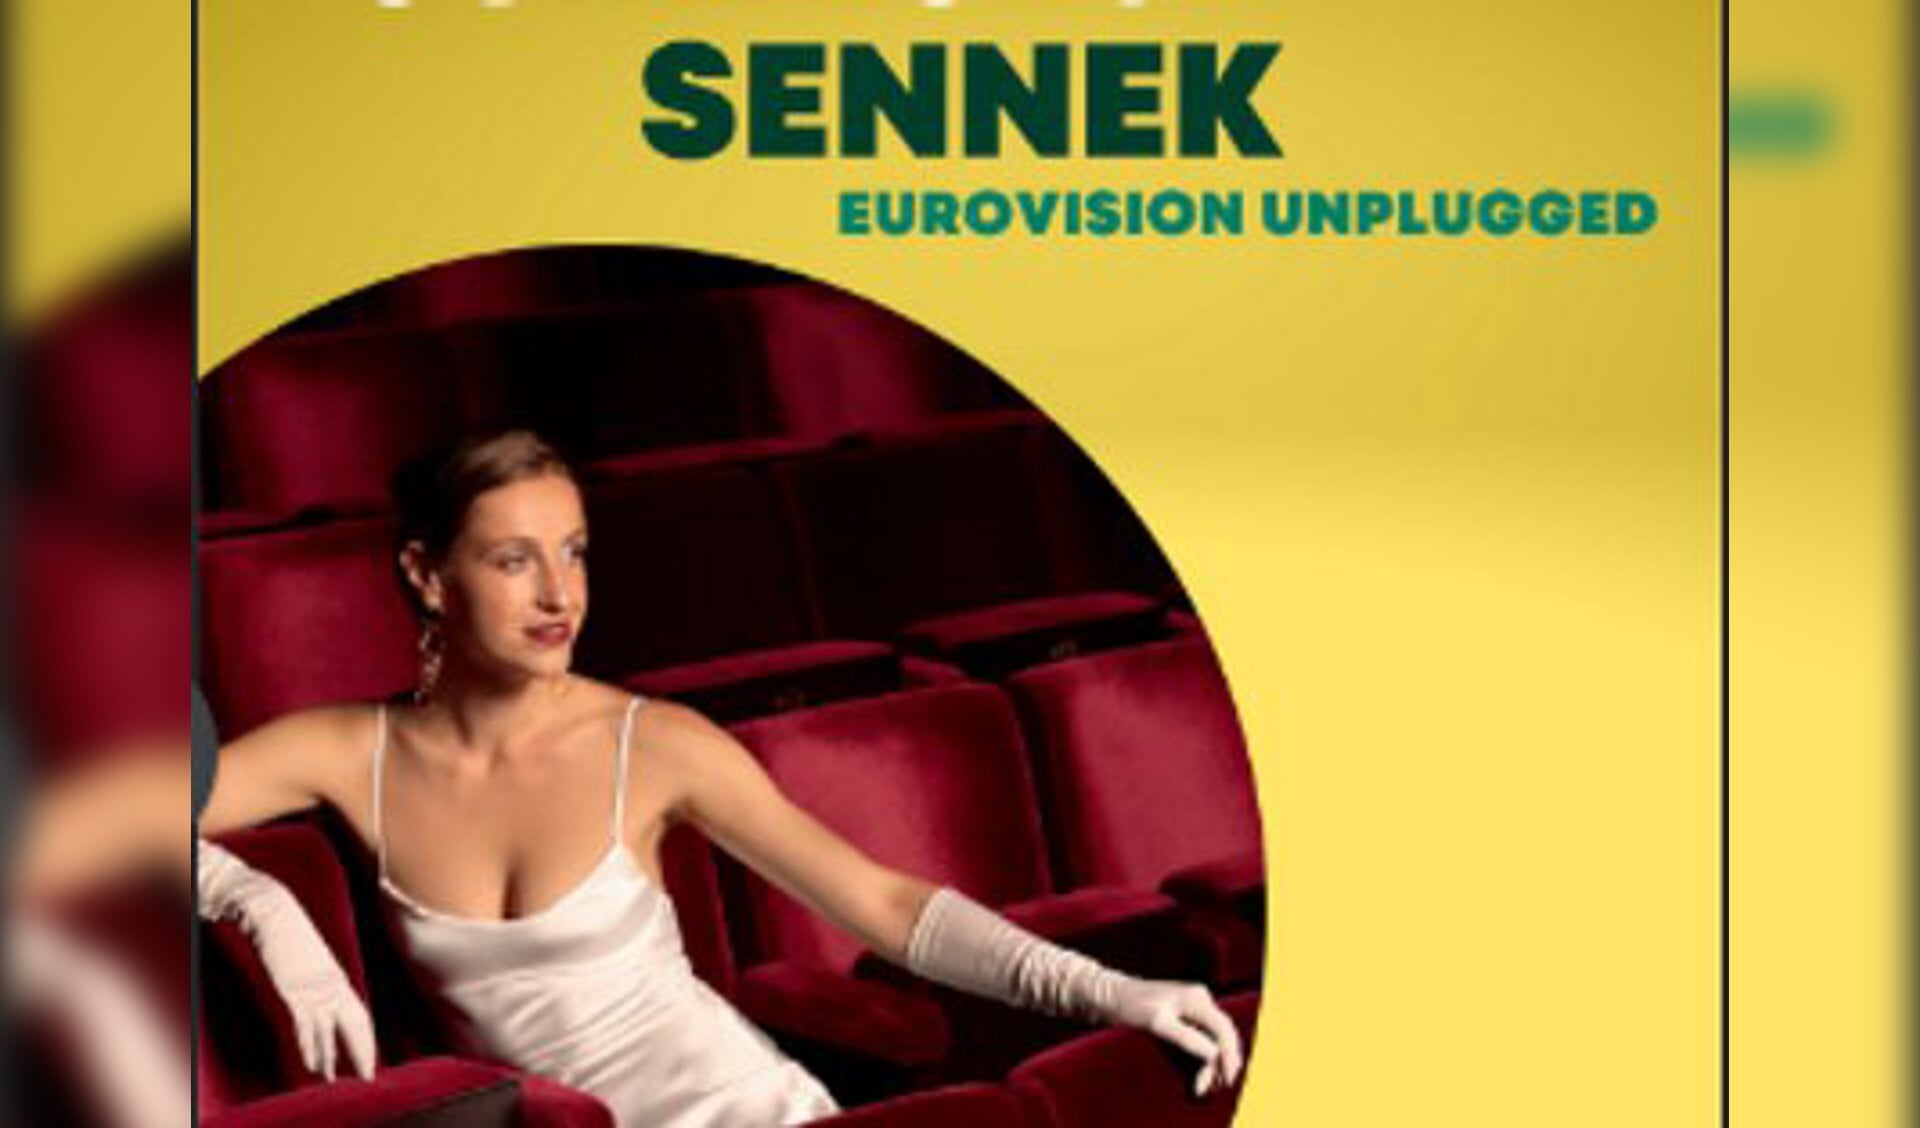 Sennek met Eurovisiesongs cover